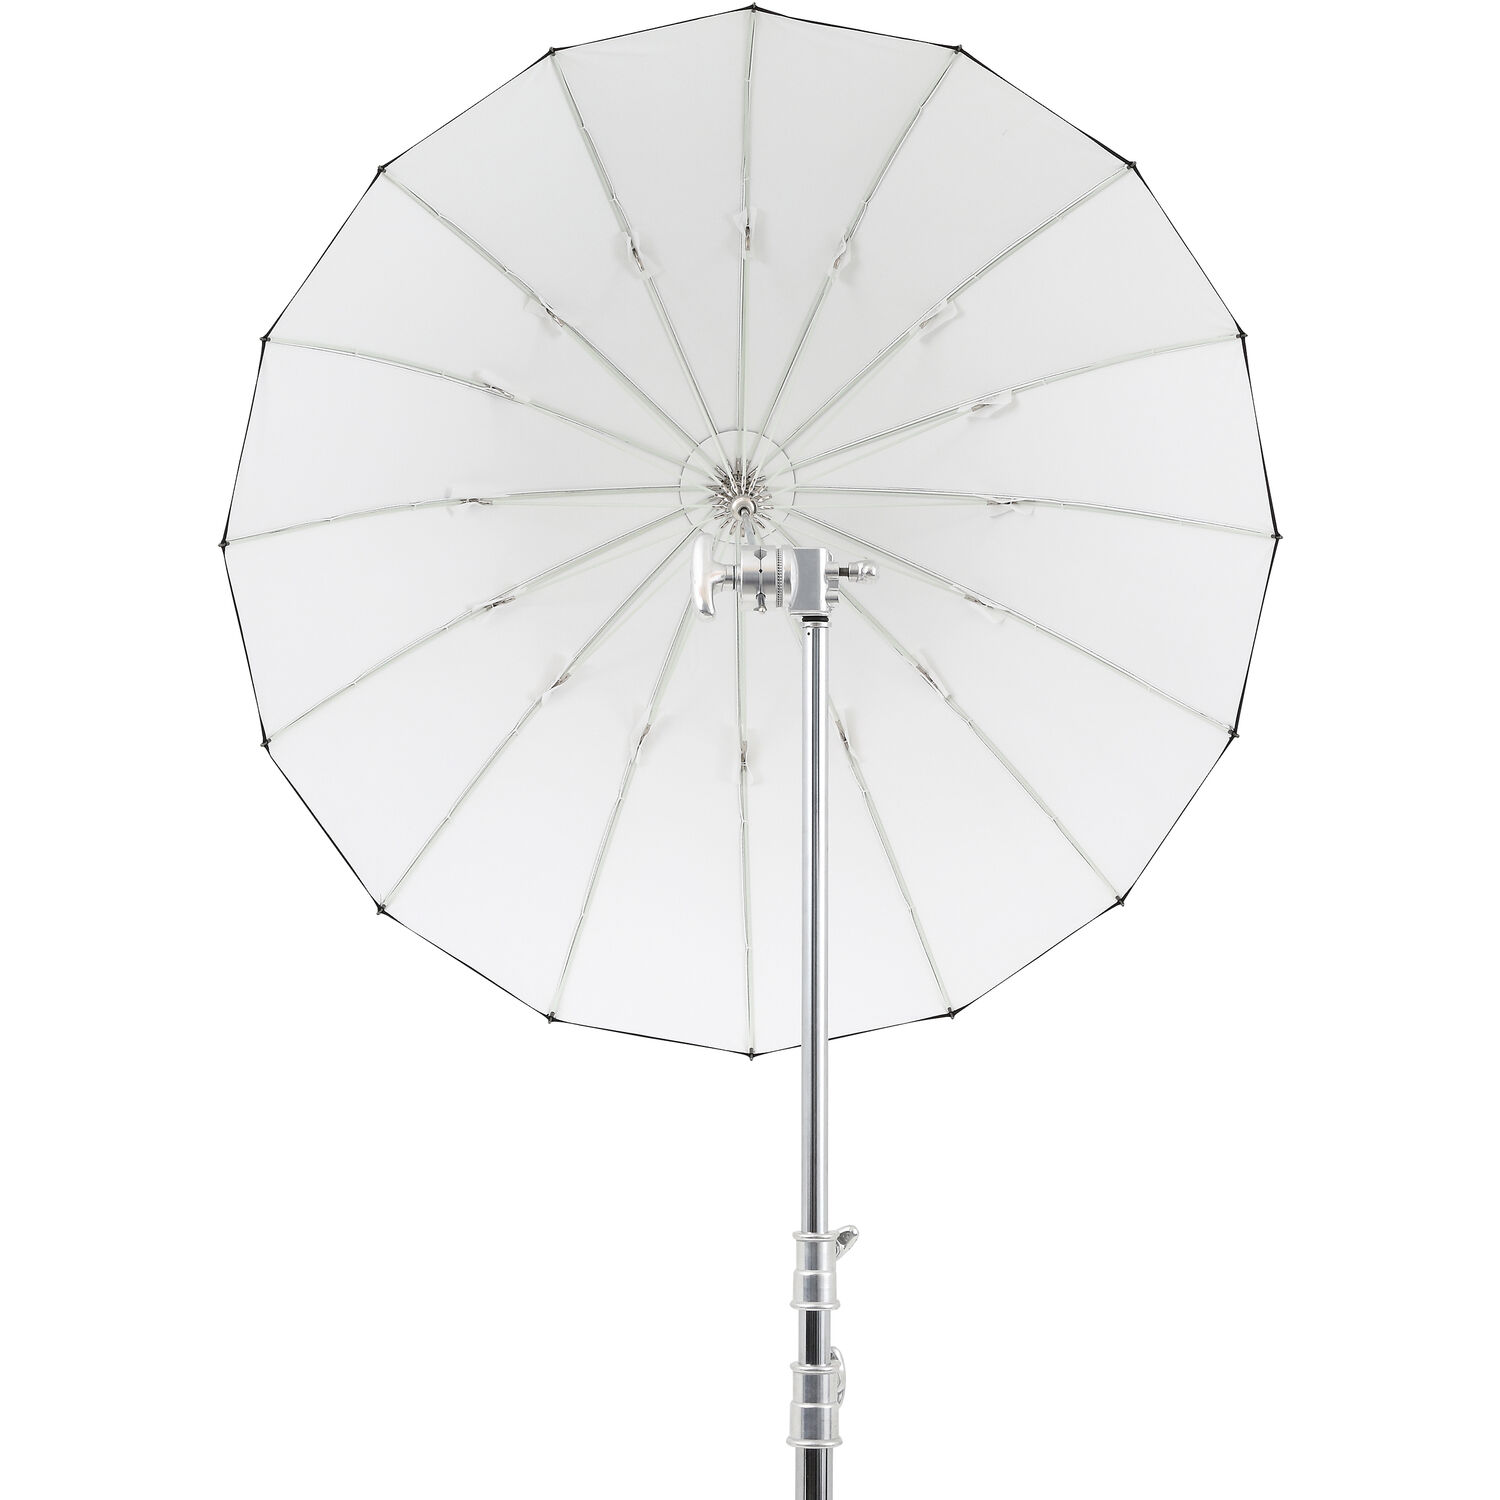 Dù Godox White Parabolic Umbrella UB-105w